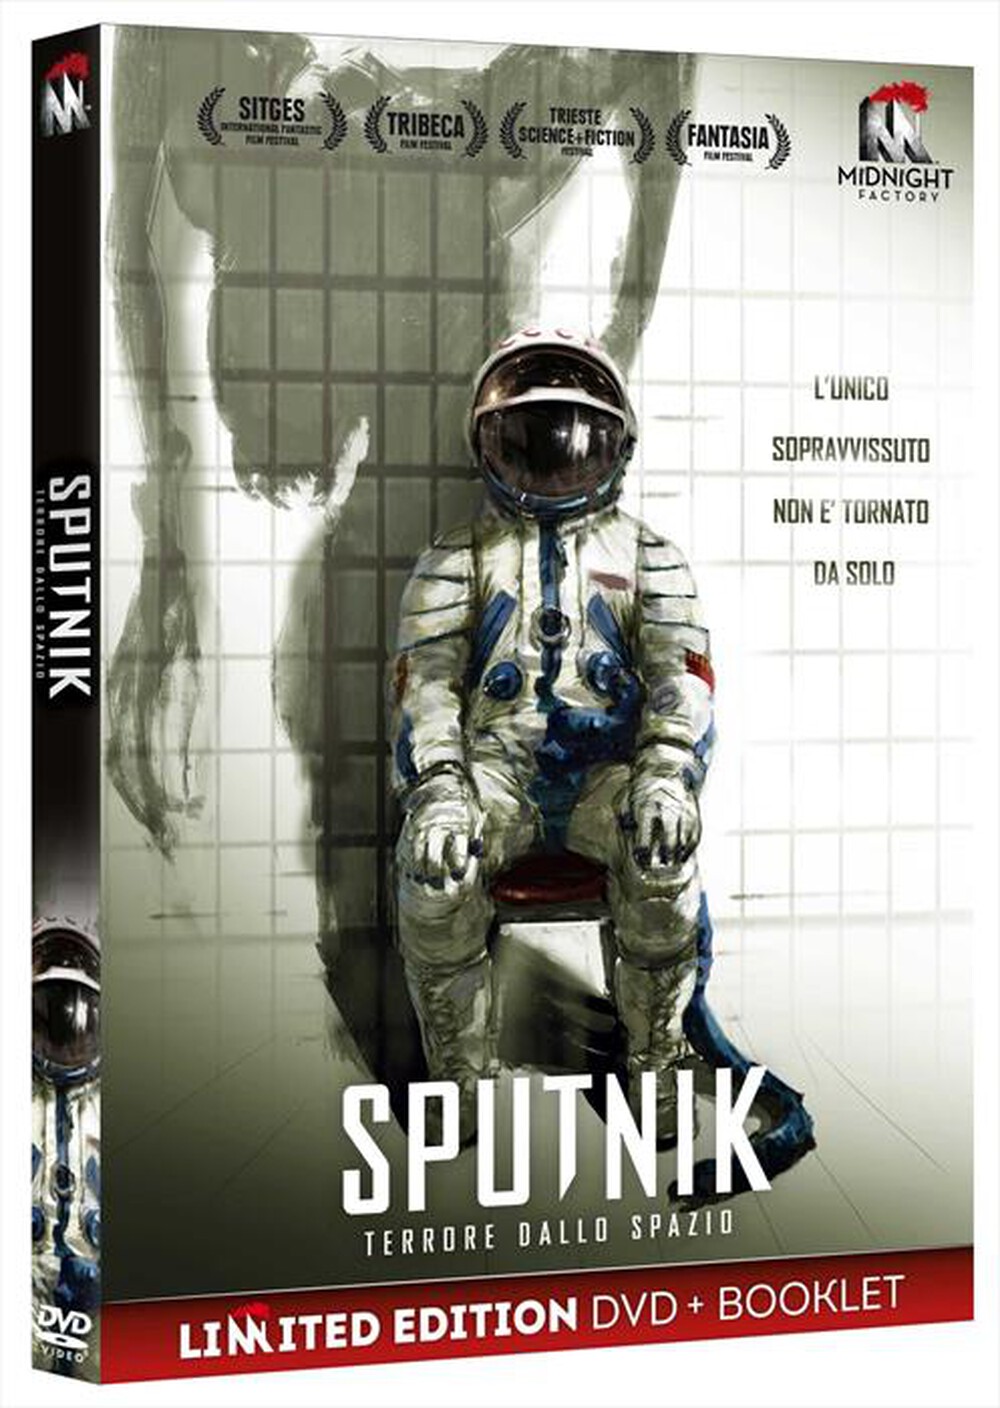 "Midnight Factory - Sputnik - Terrore Dallo Spazio (Dvd+Booklet)"